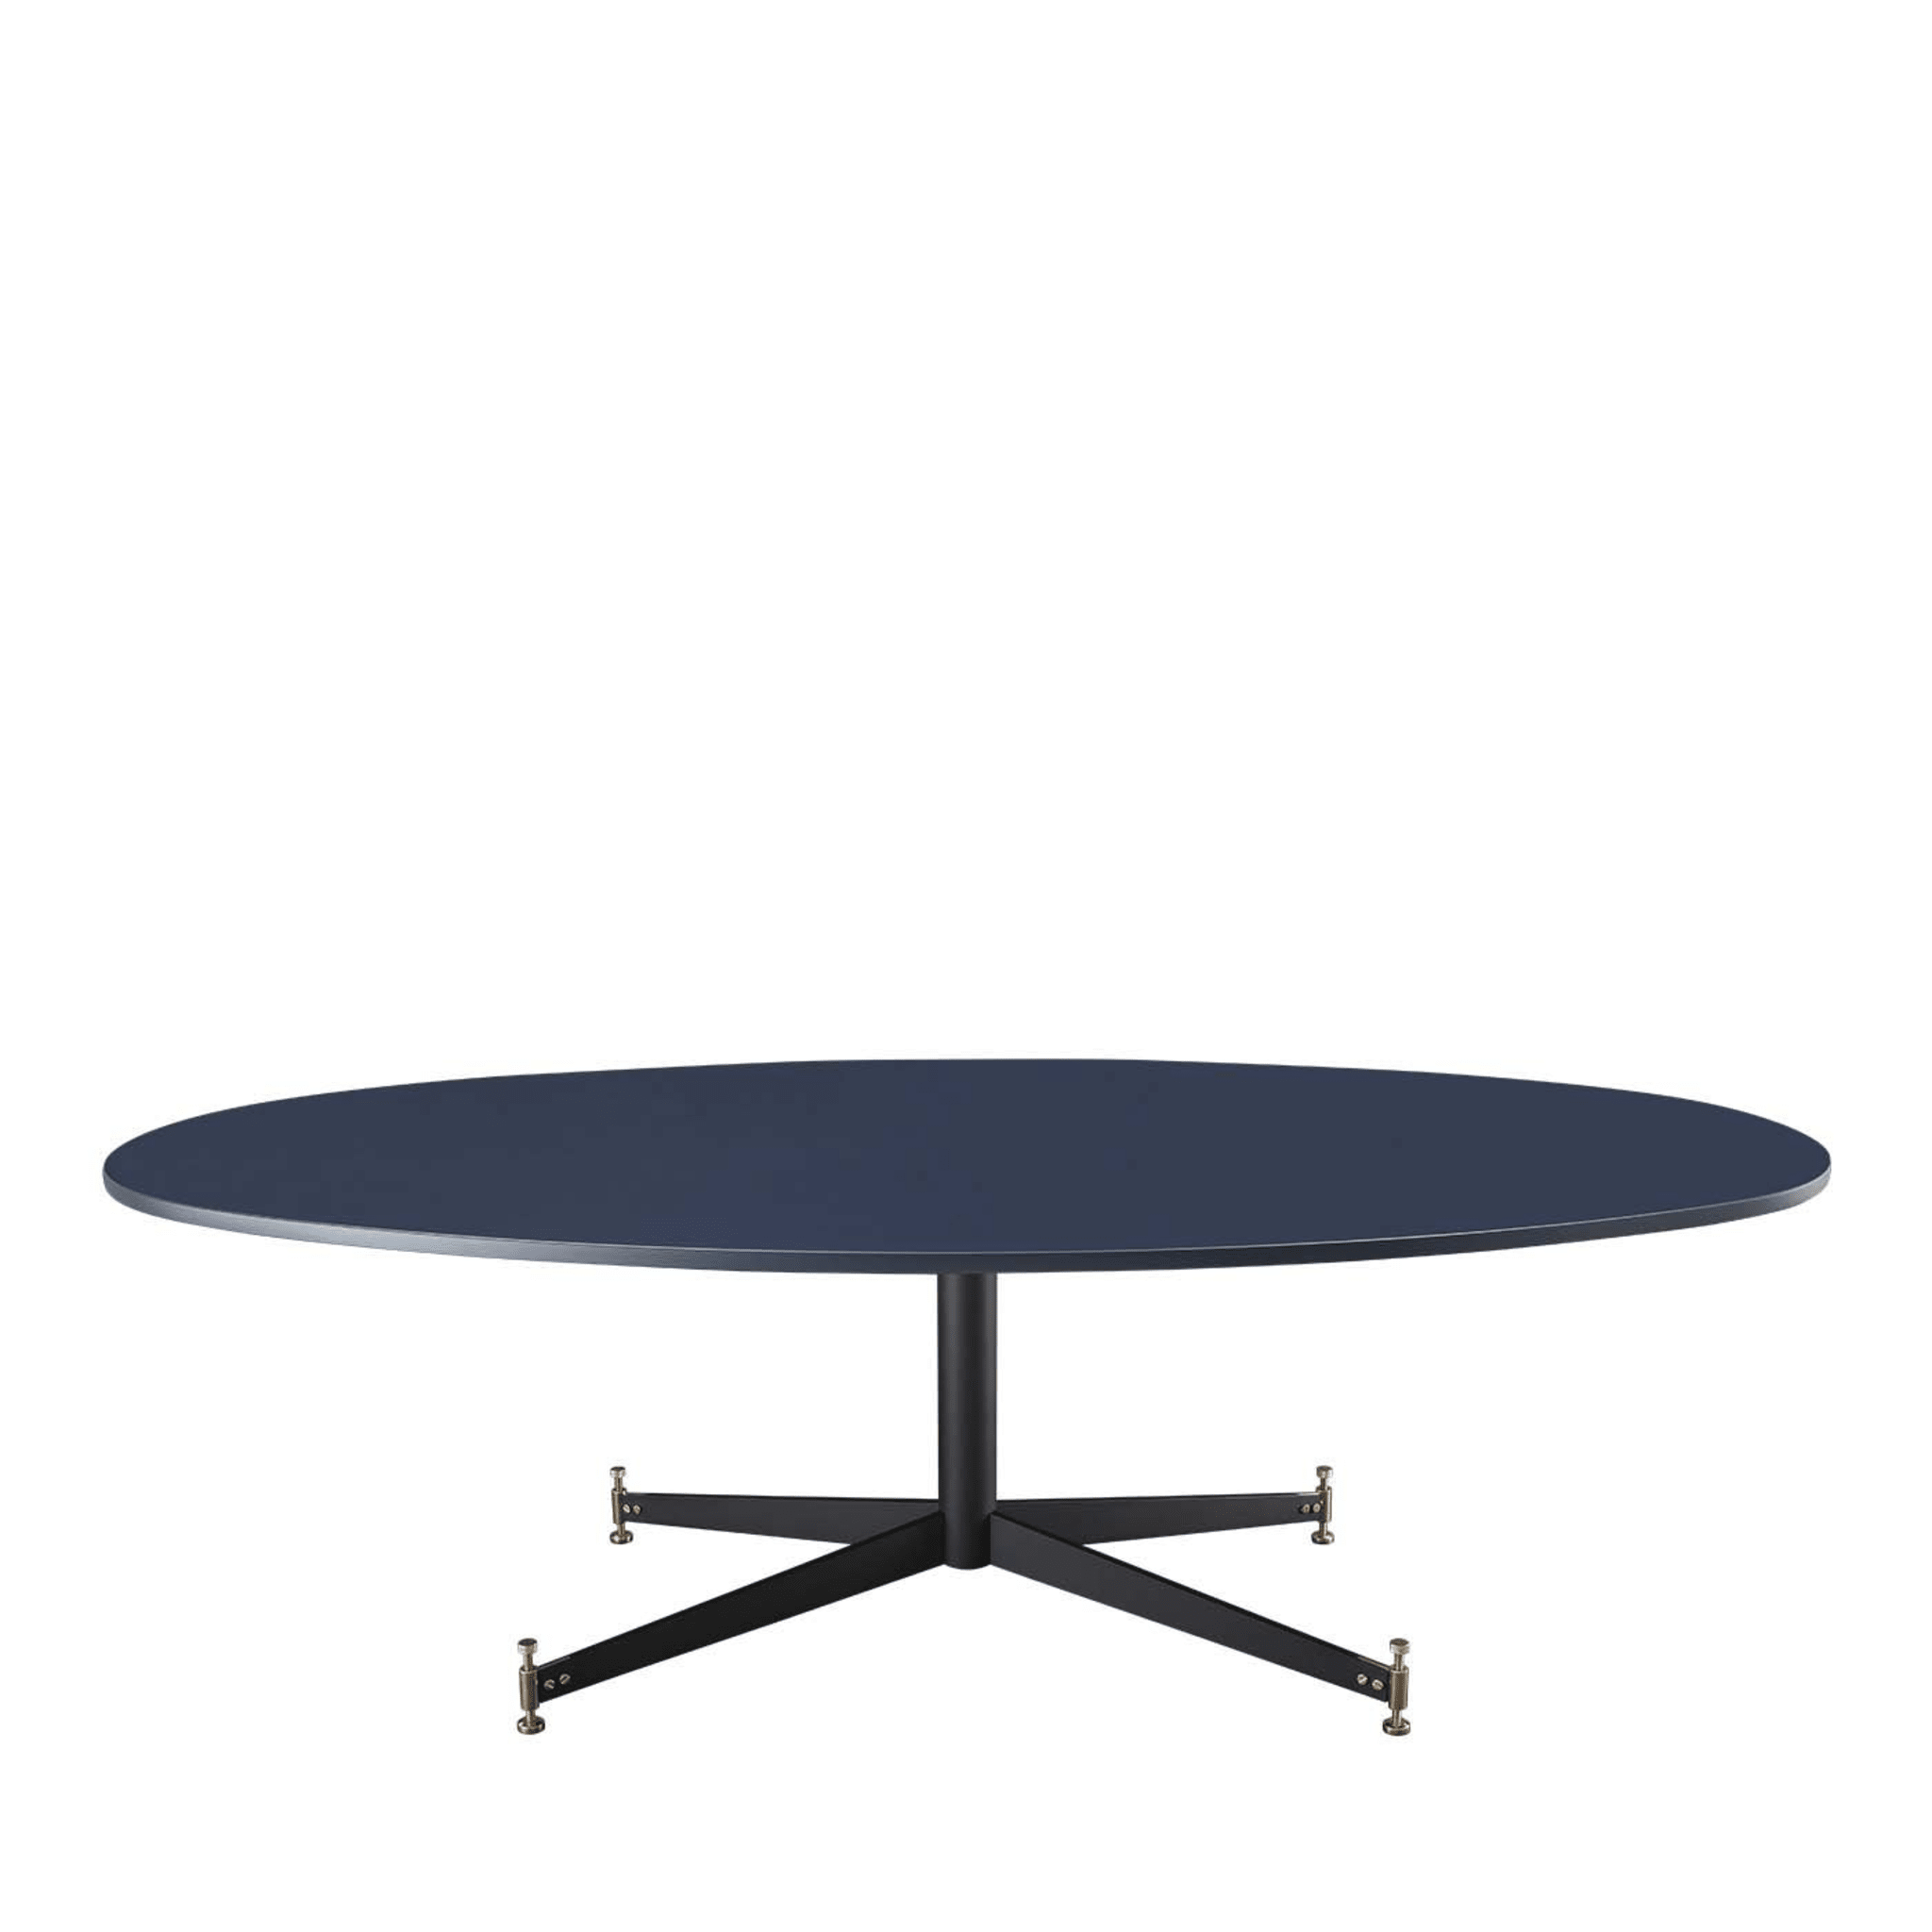 Piedi Regolabili Table by Ignazio Gardella - Main view